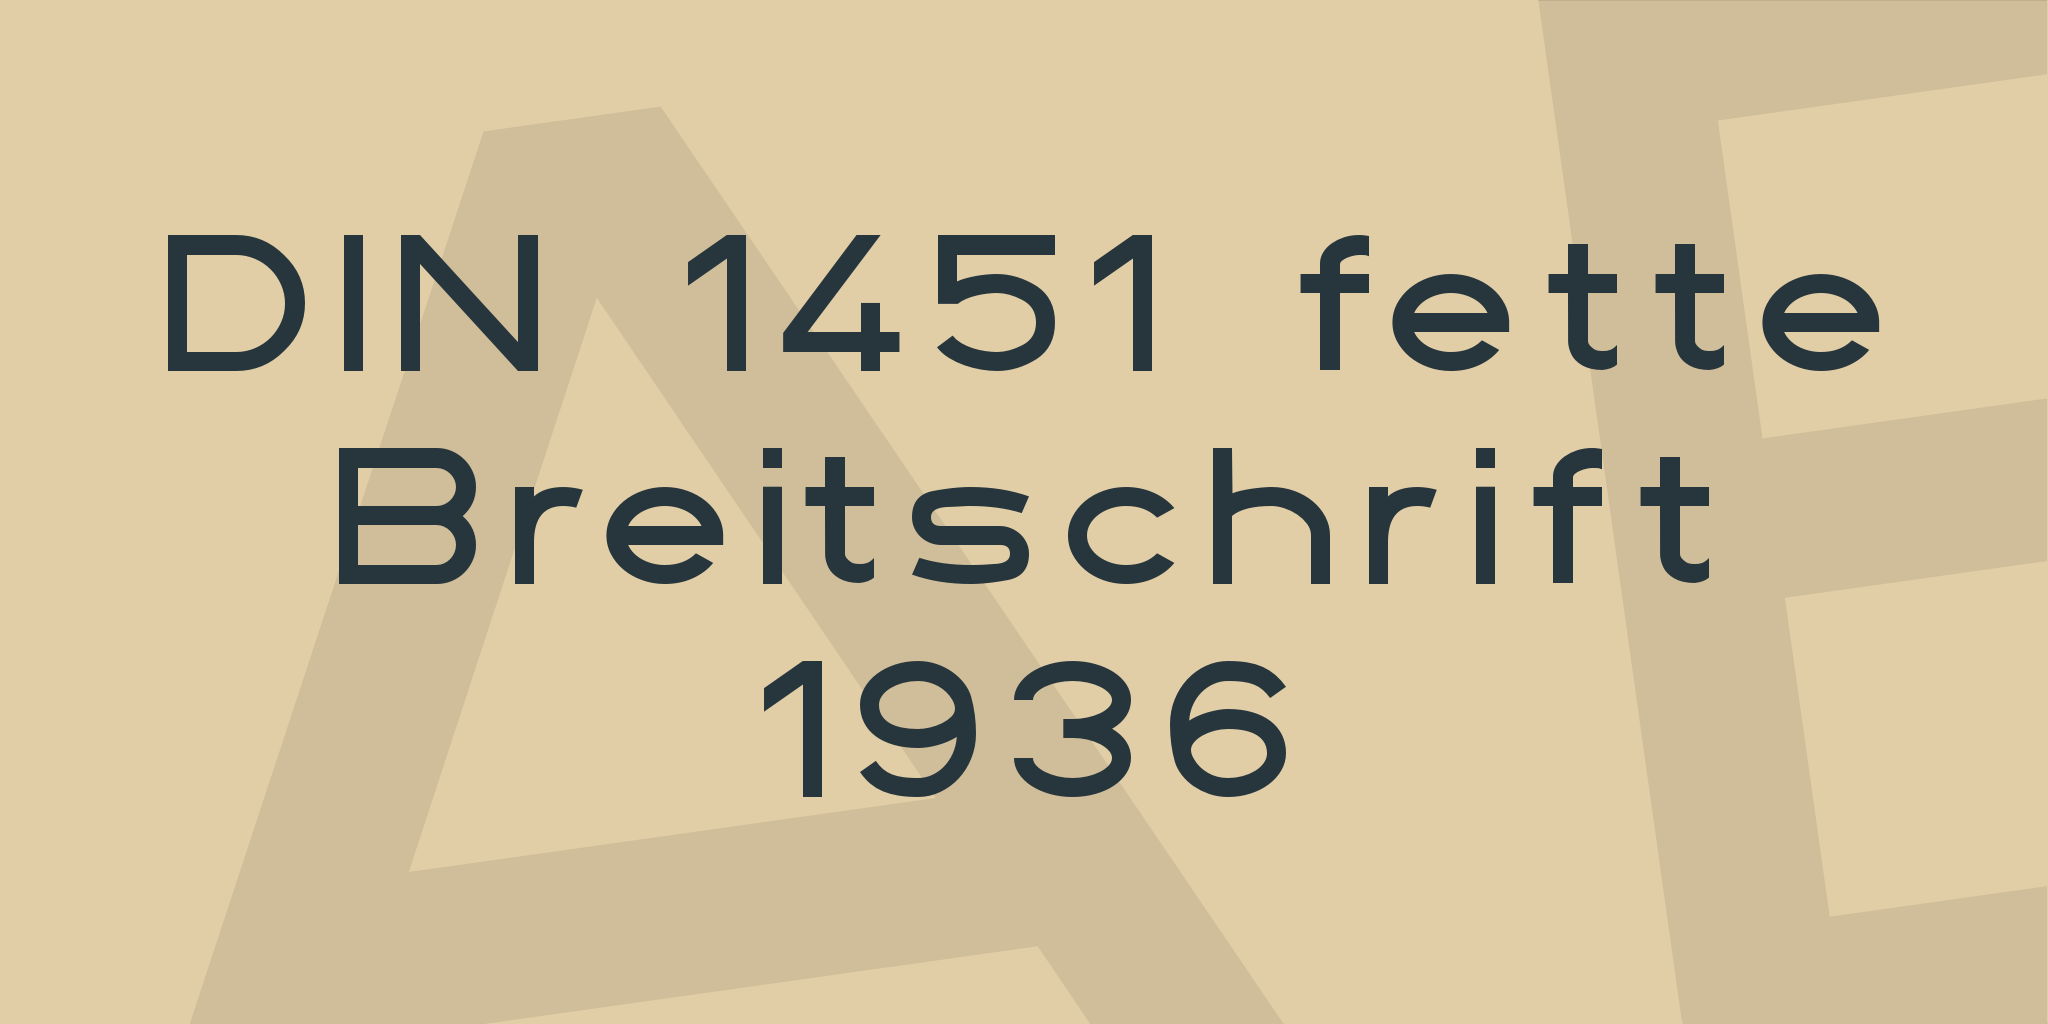 Din 1451 Fette Breitschrift 1936